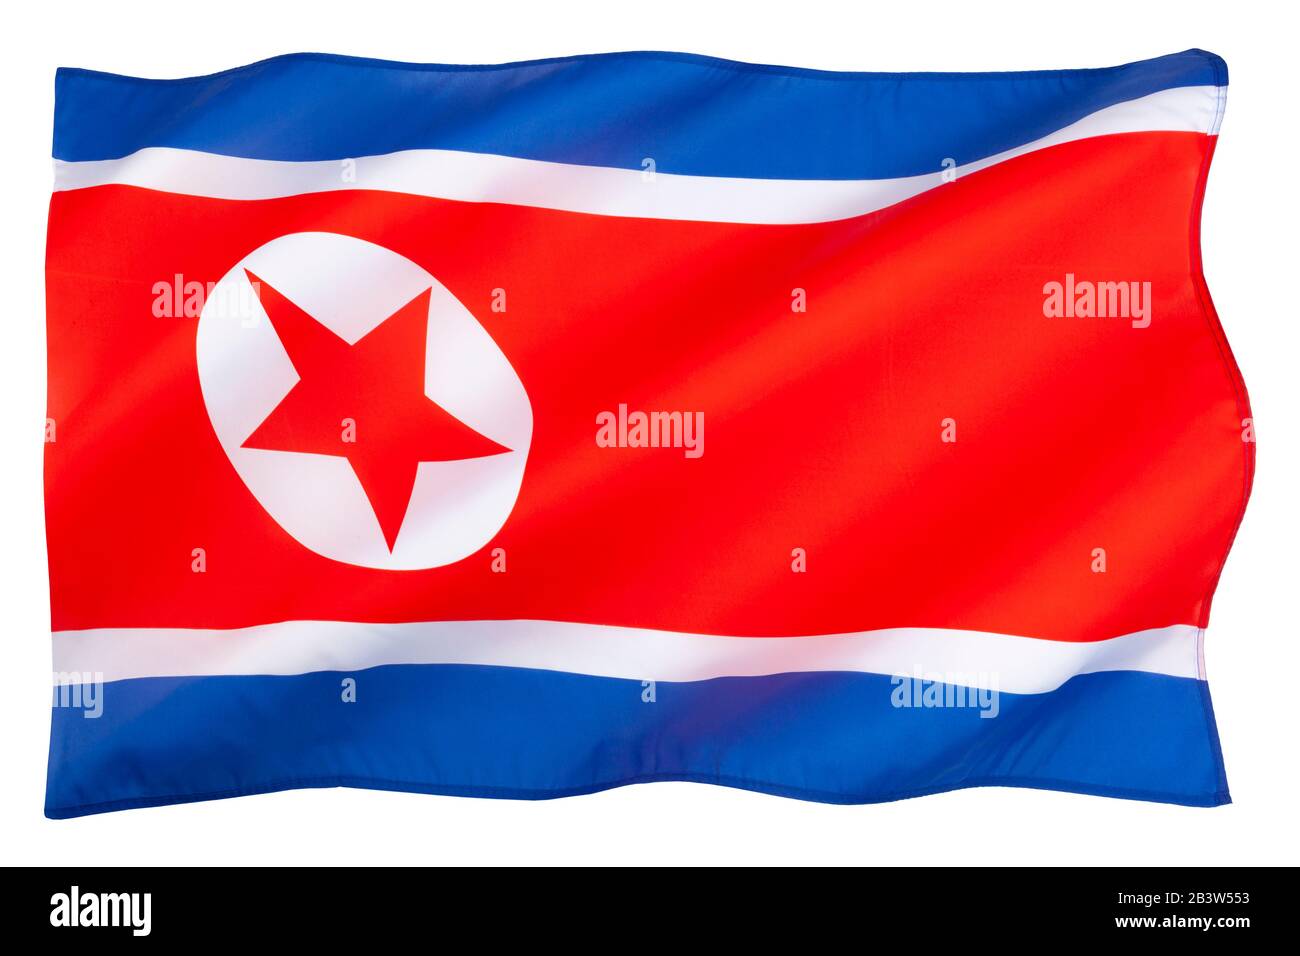 La bandiera nazionale della Corea del Nord (Repubblica Popolare democratica di Corea) Foto Stock